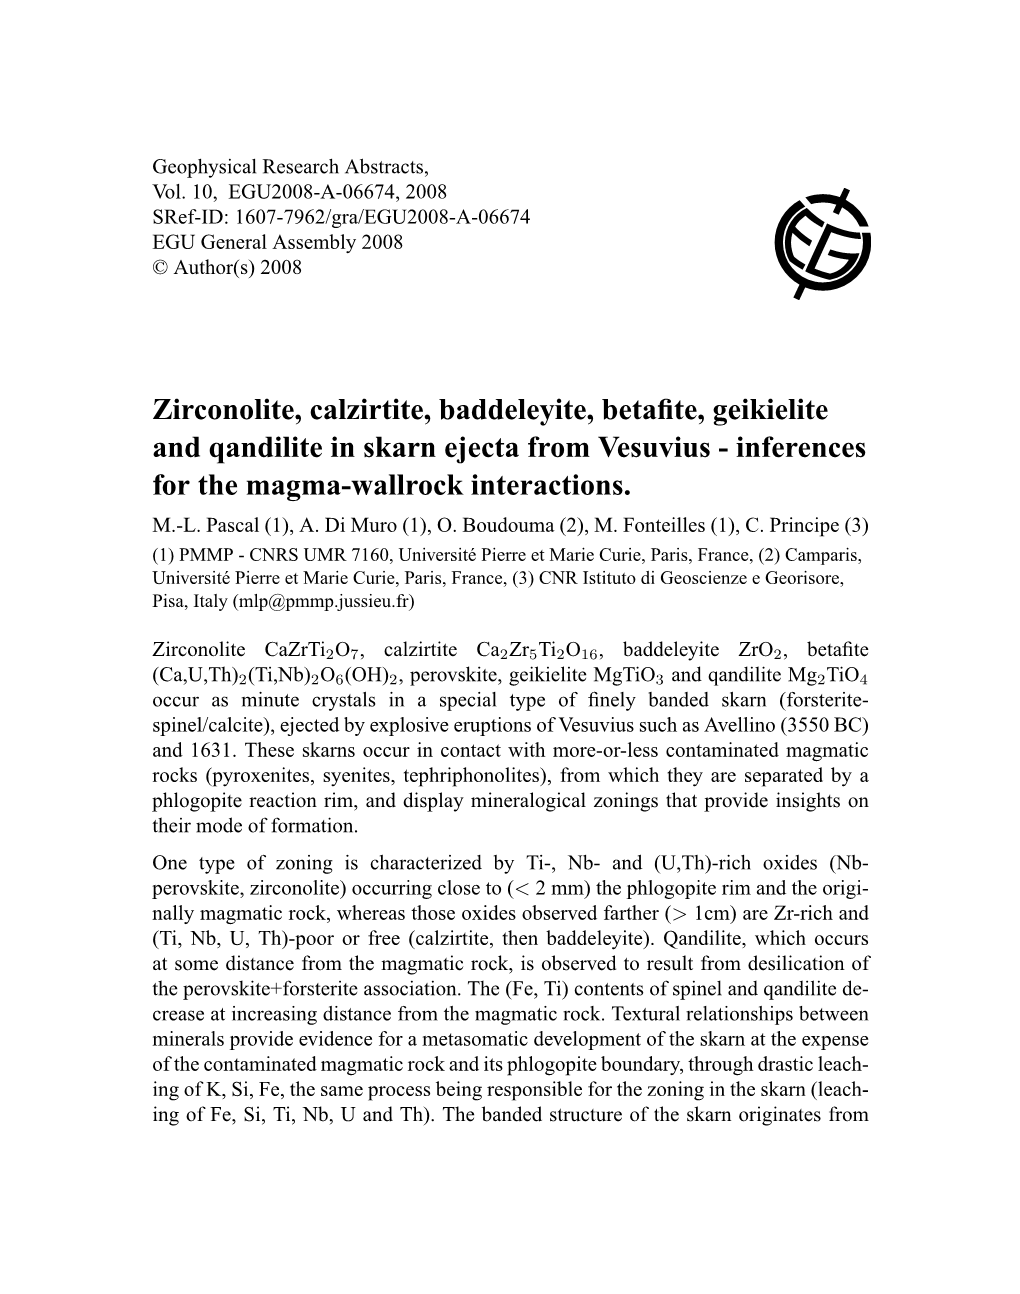 Zirconolite, Calzirtite, Baddeleyite, Betafite, Geikielite and Qandilite In